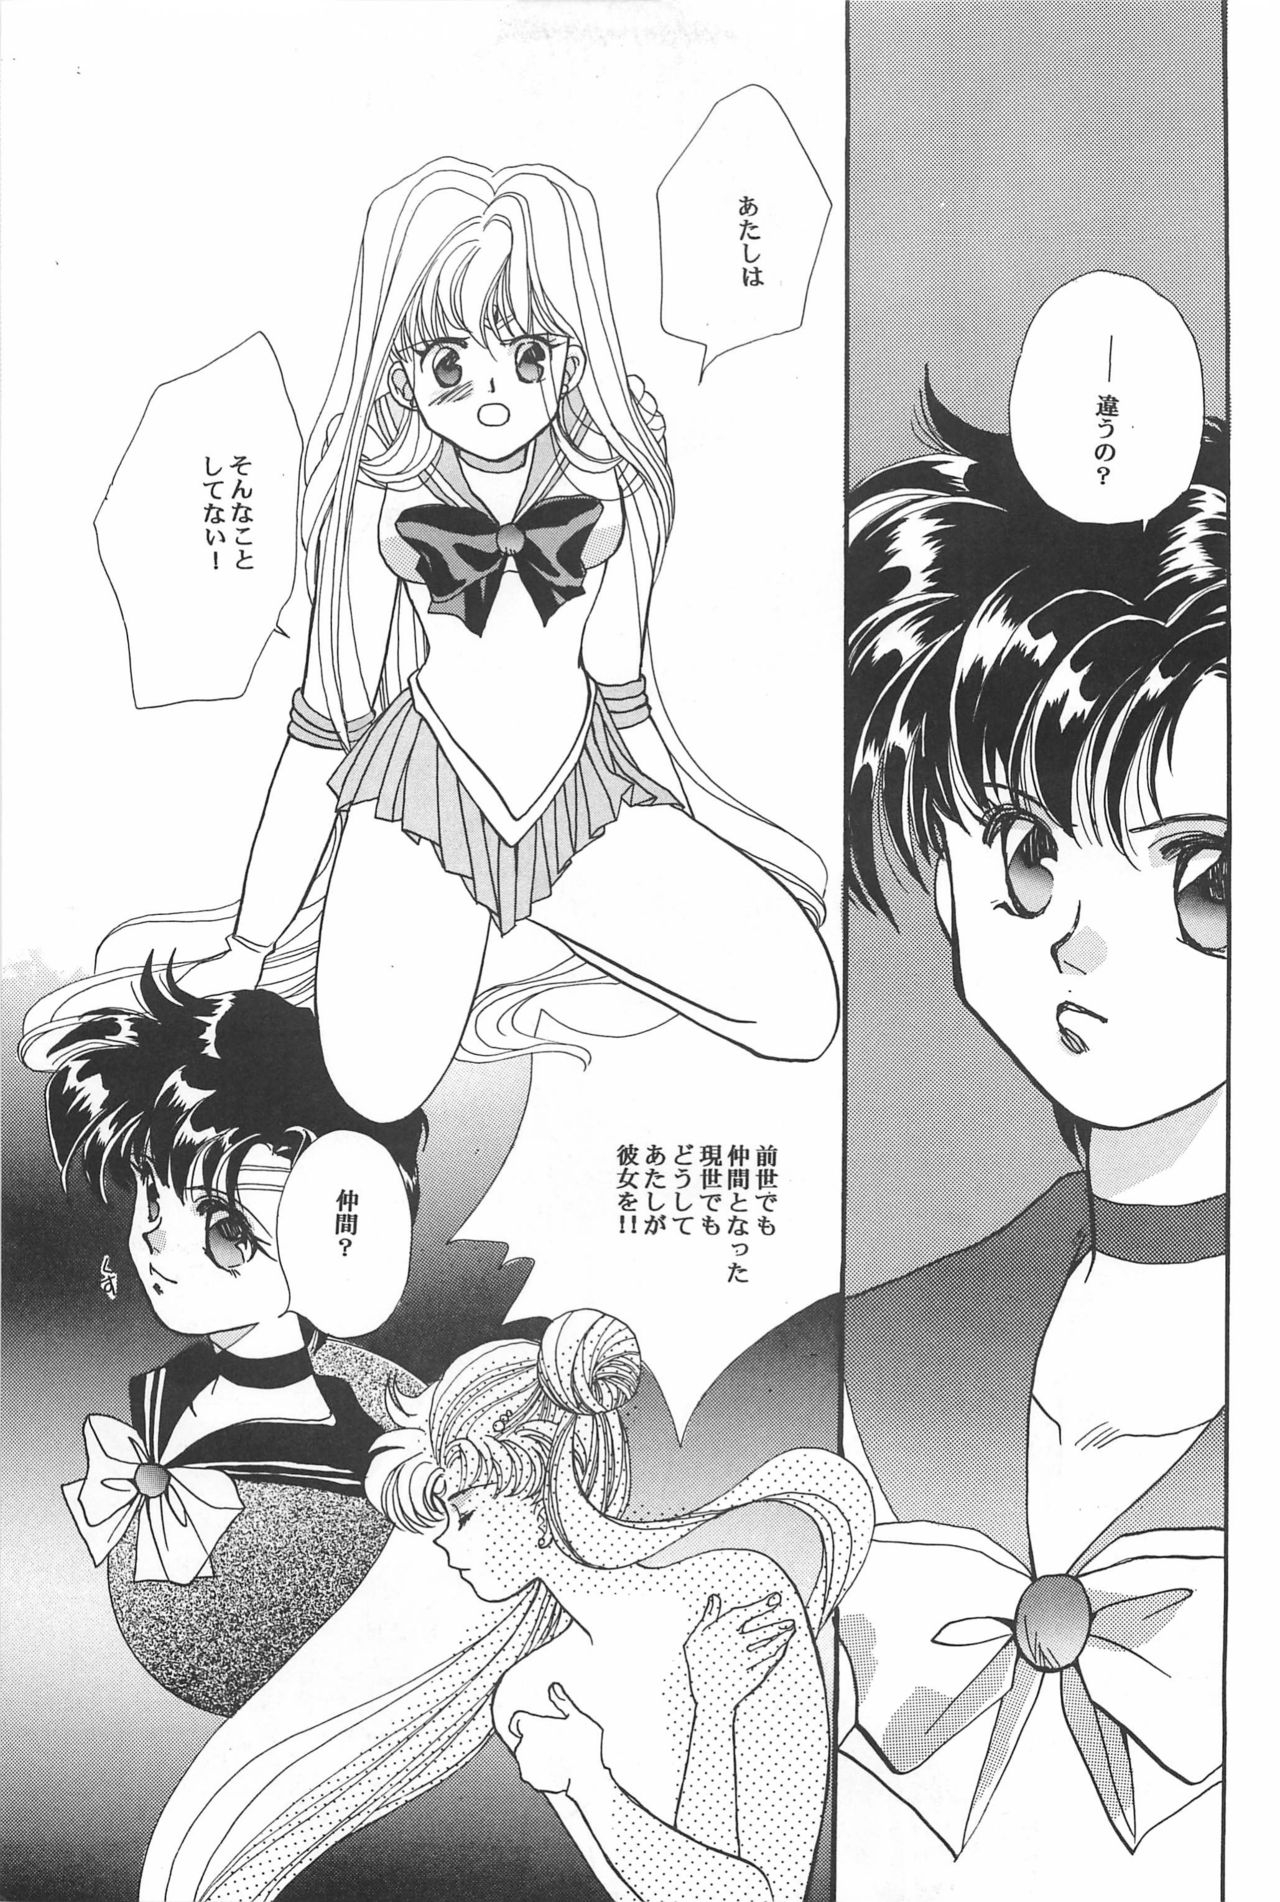 [Hello World (Muttri Moony)] Kaze no You ni Yume no You ni - Sailor Moon Collection (Sailor Moon) 140